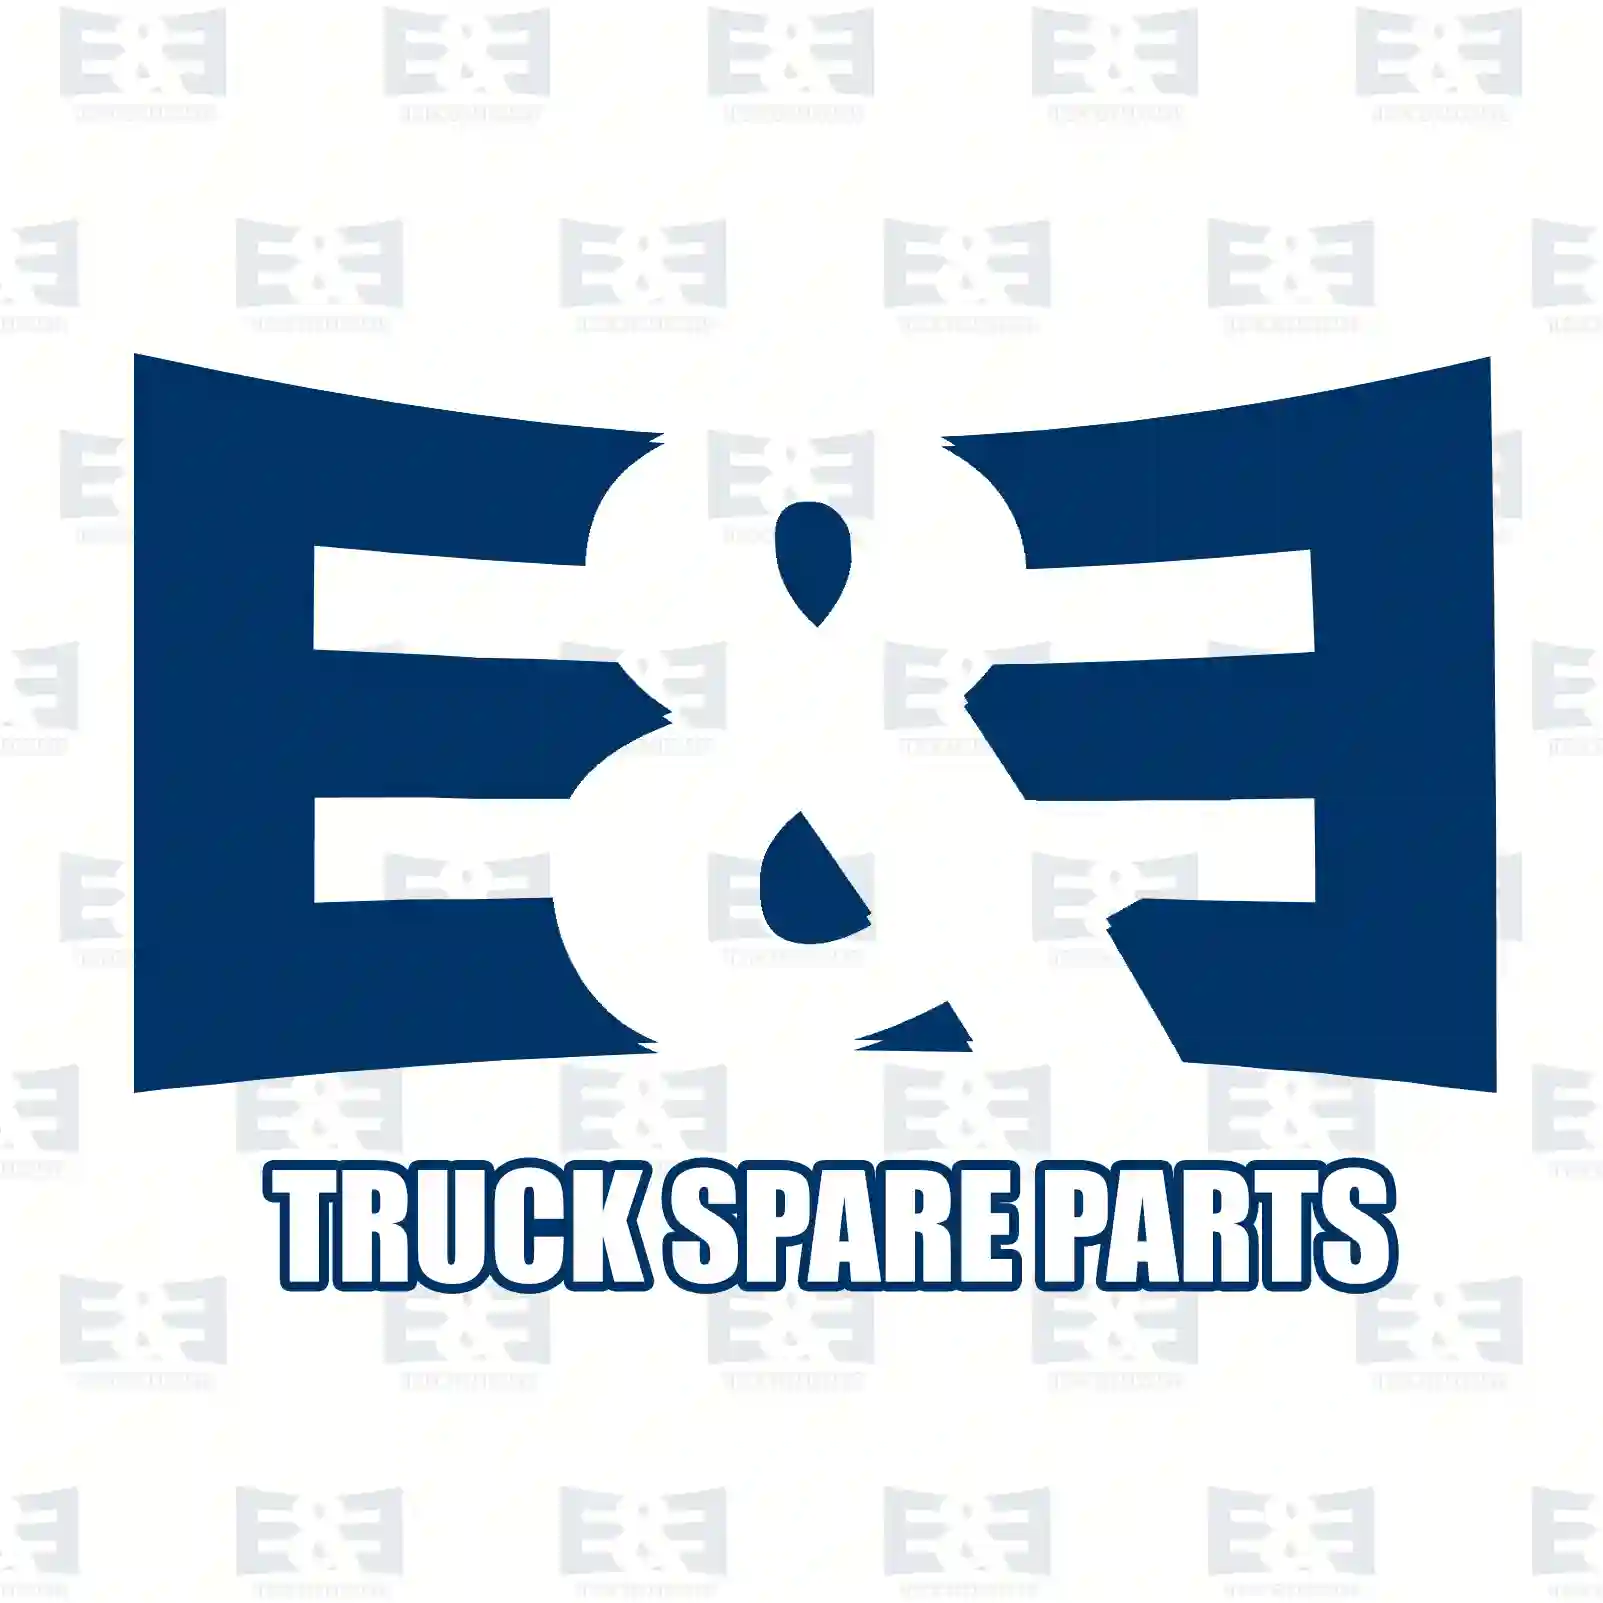 Fan clutch, 2E2201494, 51066300144 ||  2E2201494 E&E Truck Spare Parts | Truck Spare Parts, Auotomotive Spare Parts Fan clutch, 2E2201494, 51066300144 ||  2E2201494 E&E Truck Spare Parts | Truck Spare Parts, Auotomotive Spare Parts